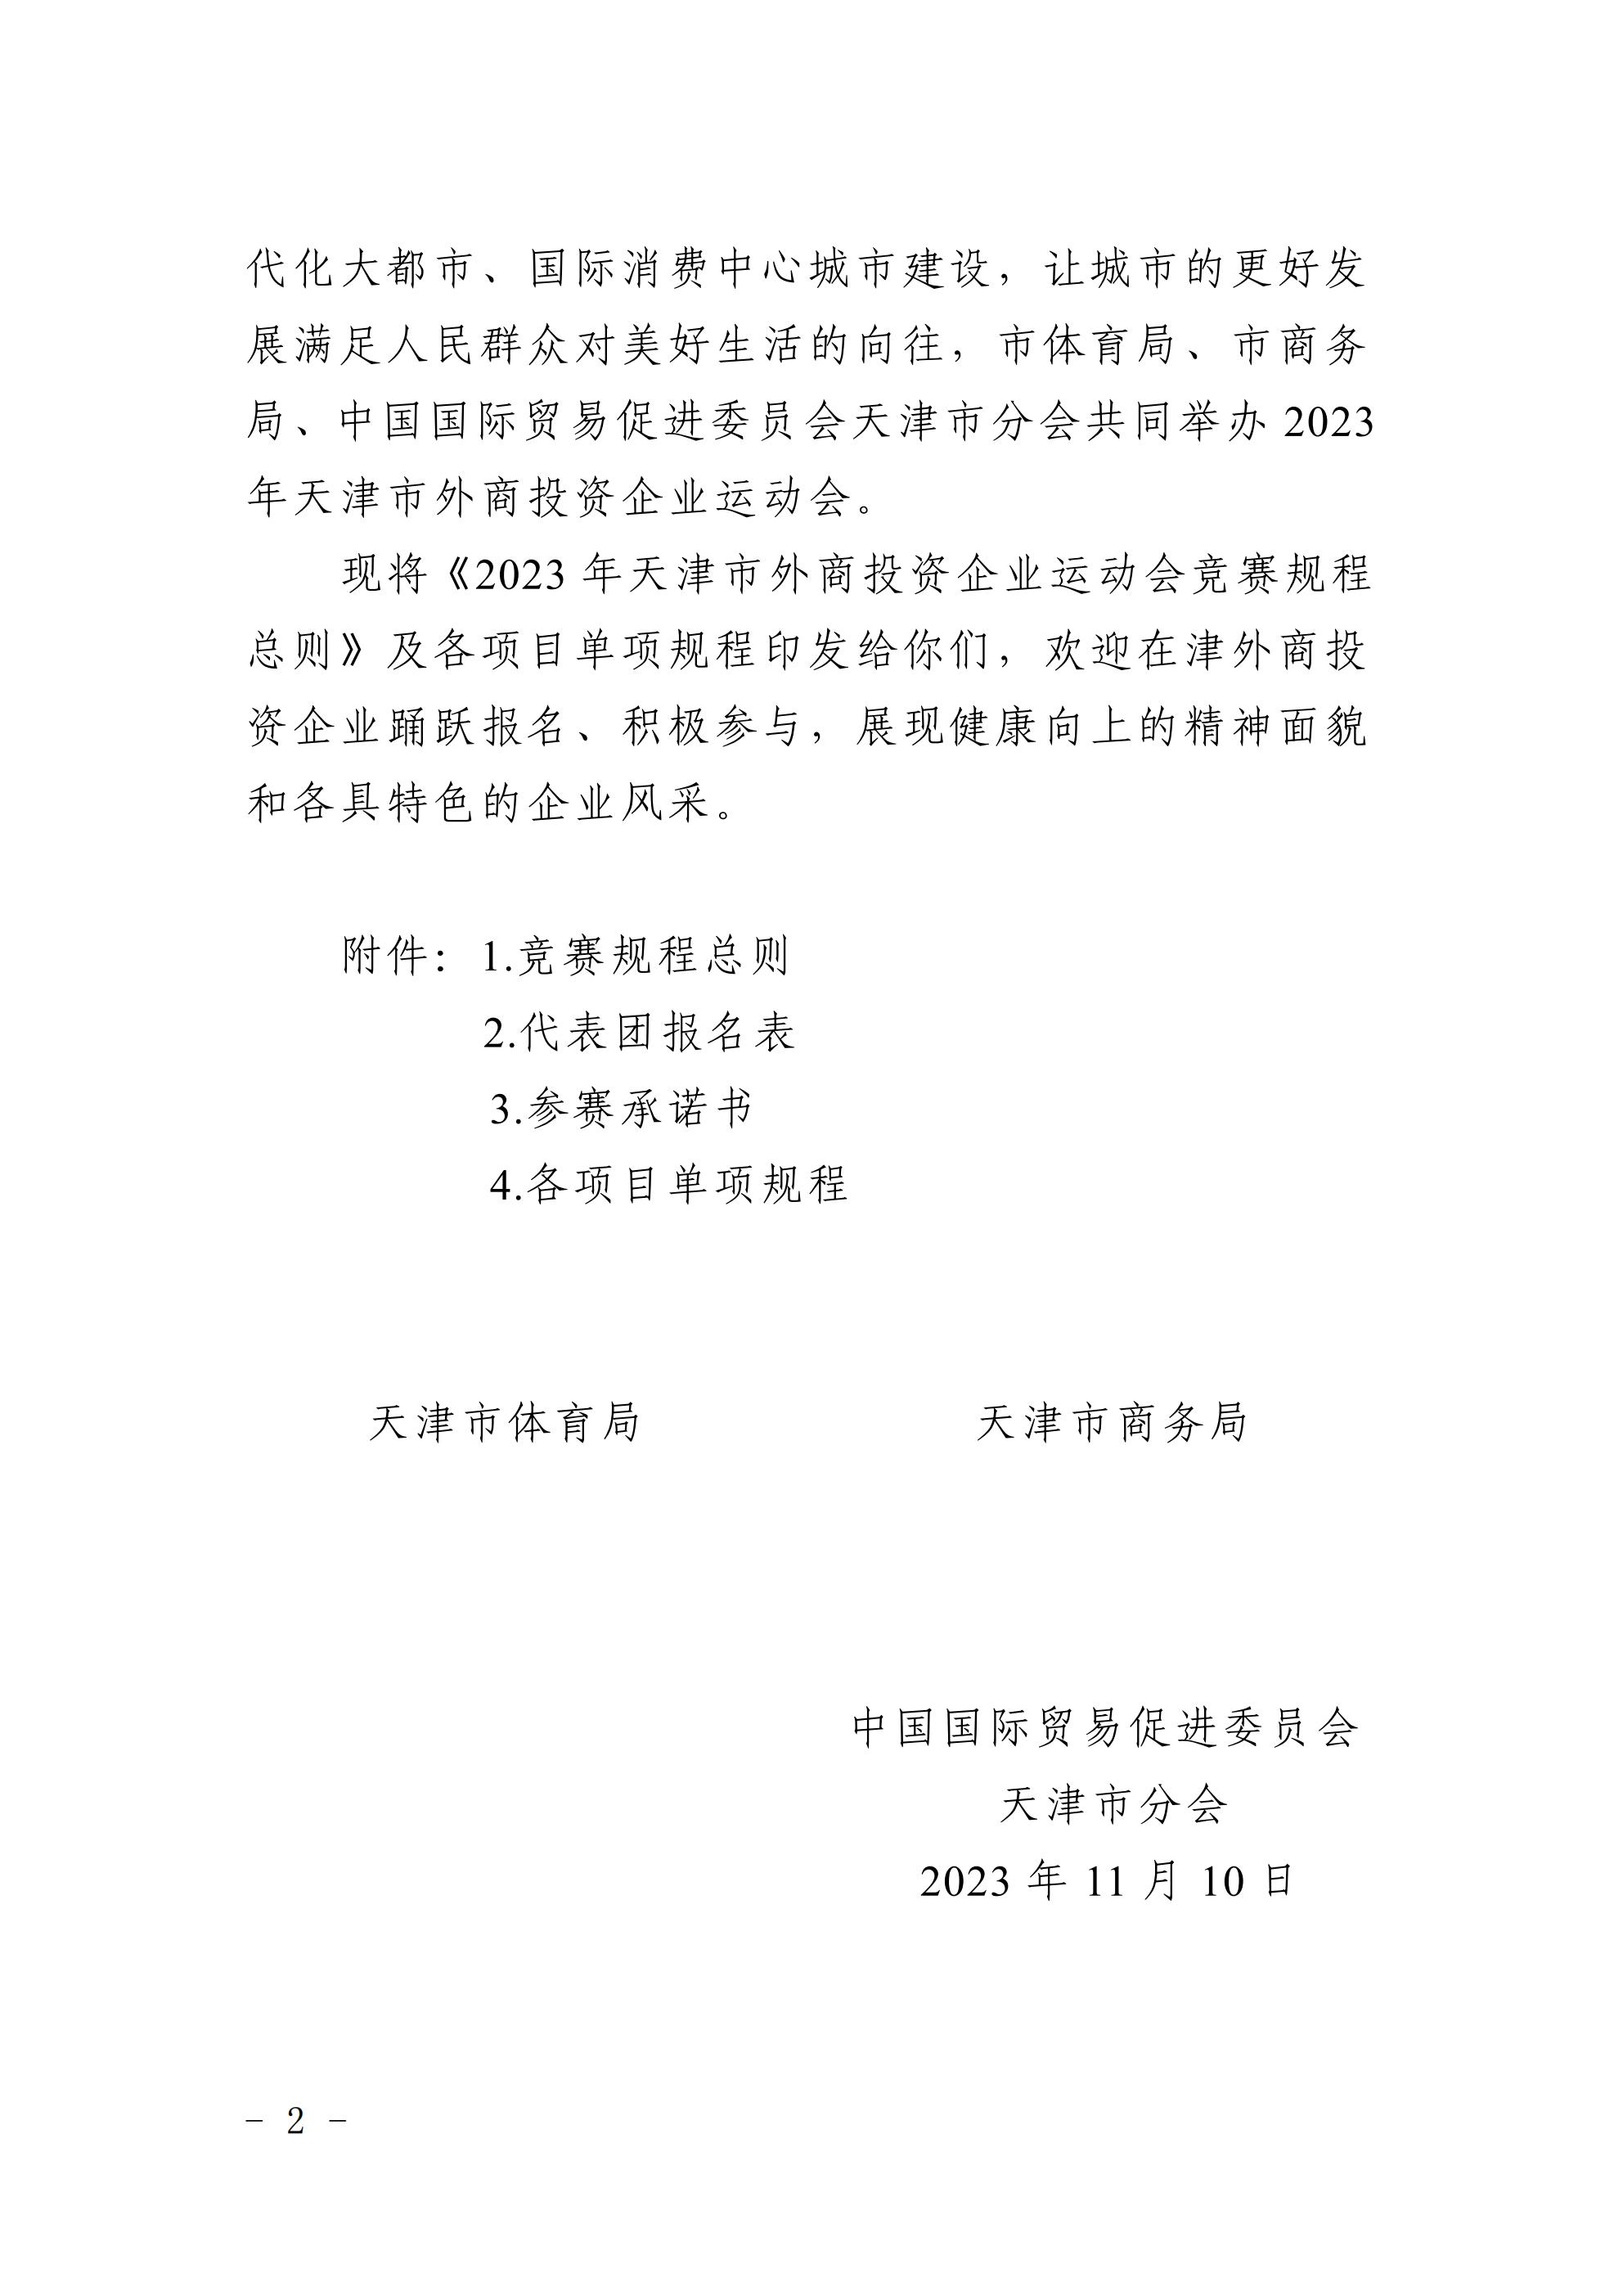 天津市体育局 天津市商务局 中国国际贸易促进委员会天津市分会关于举办2023年 天津市外商投资企业运动会的通知(图2)